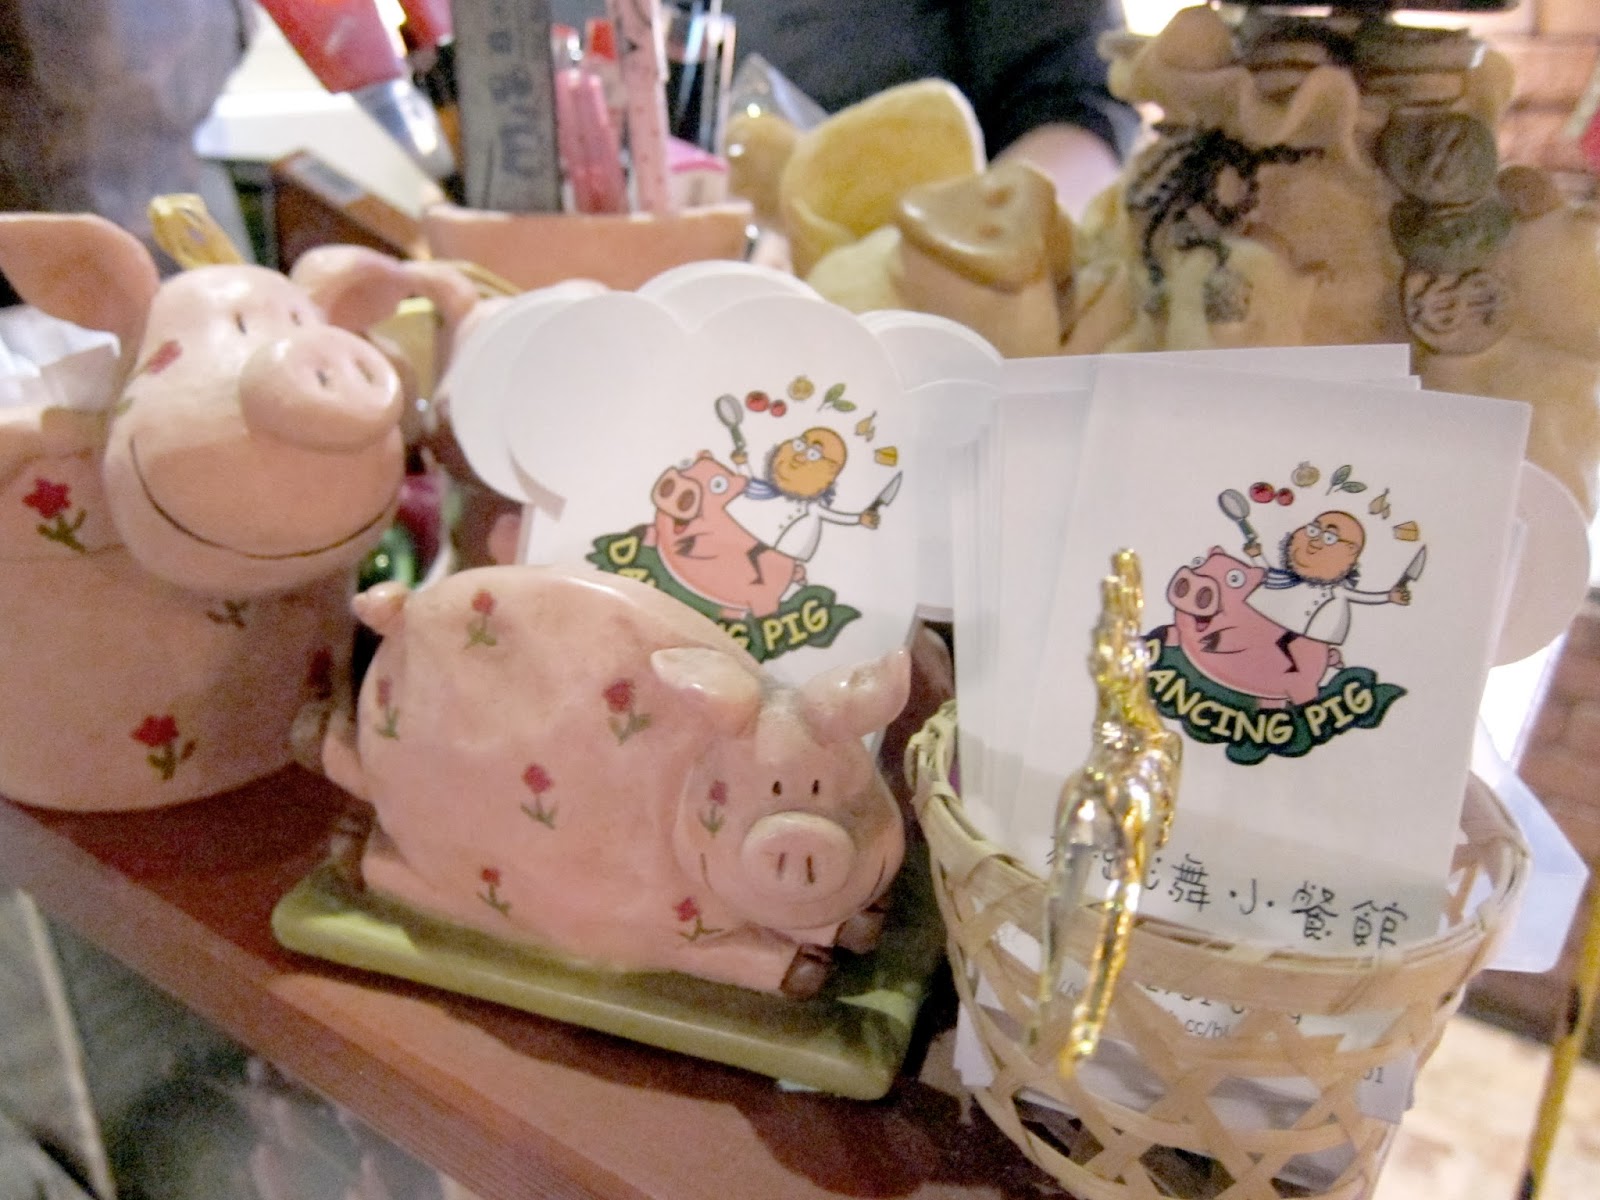 【大安區美食】豬跳舞小餐館(Dancing Pig)。與小豬為舞的俏皮餐館&創意美食